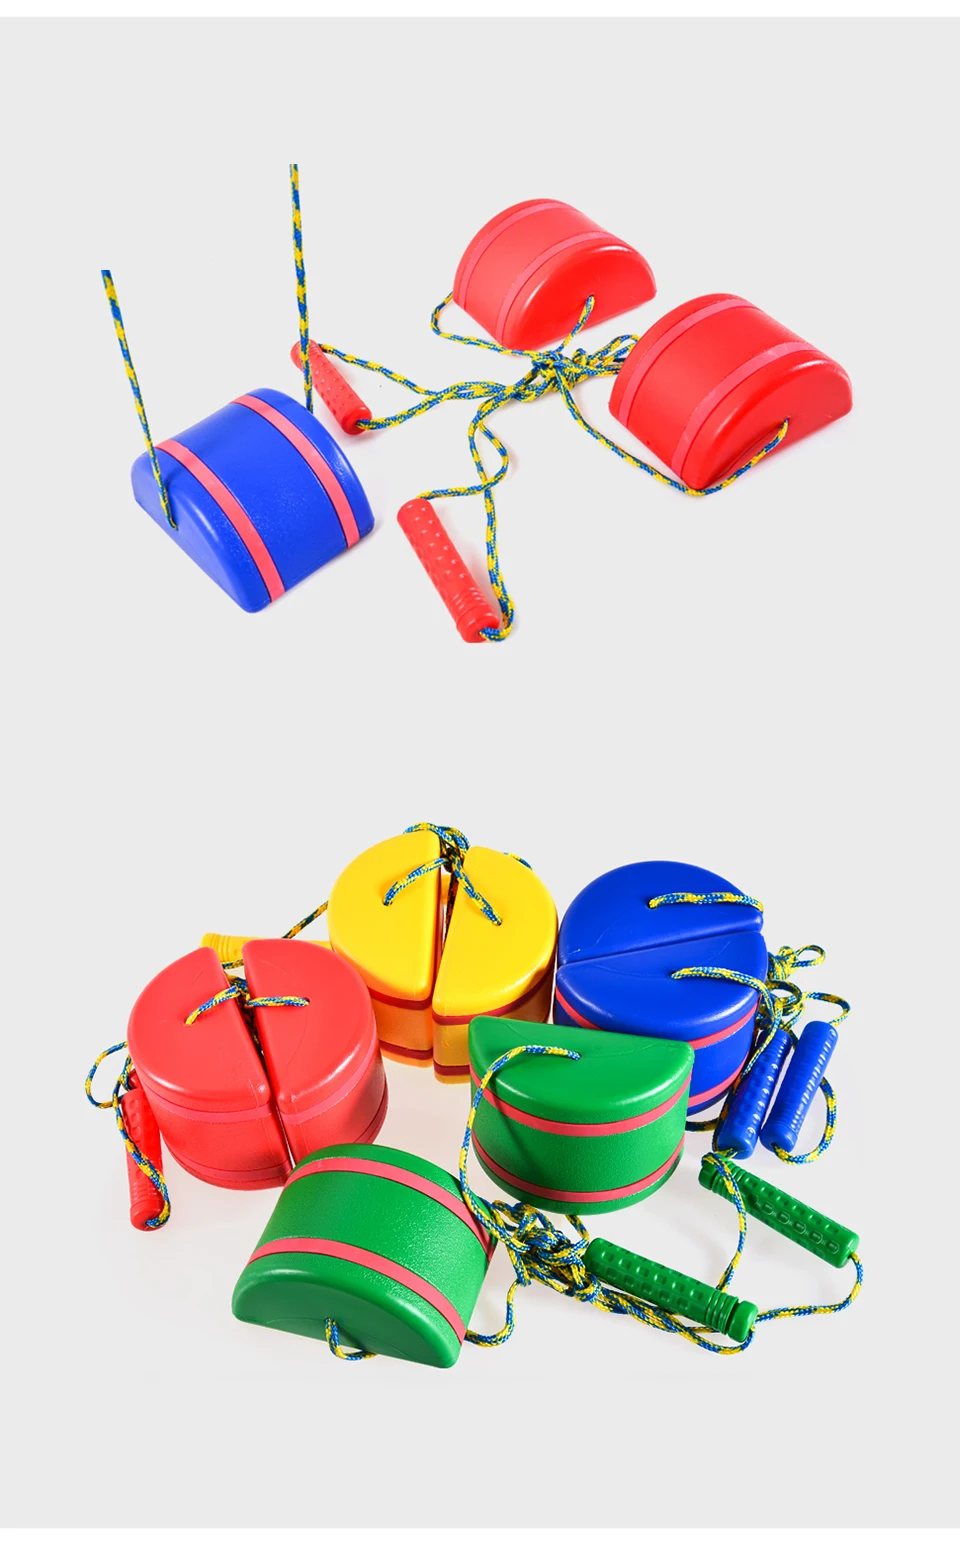 Ruizhi Детские шаговые камни Детский сад Stilts с ручками сенсорная интеграция баланс Спортивная уличная игра Детские игрушки RZ1123